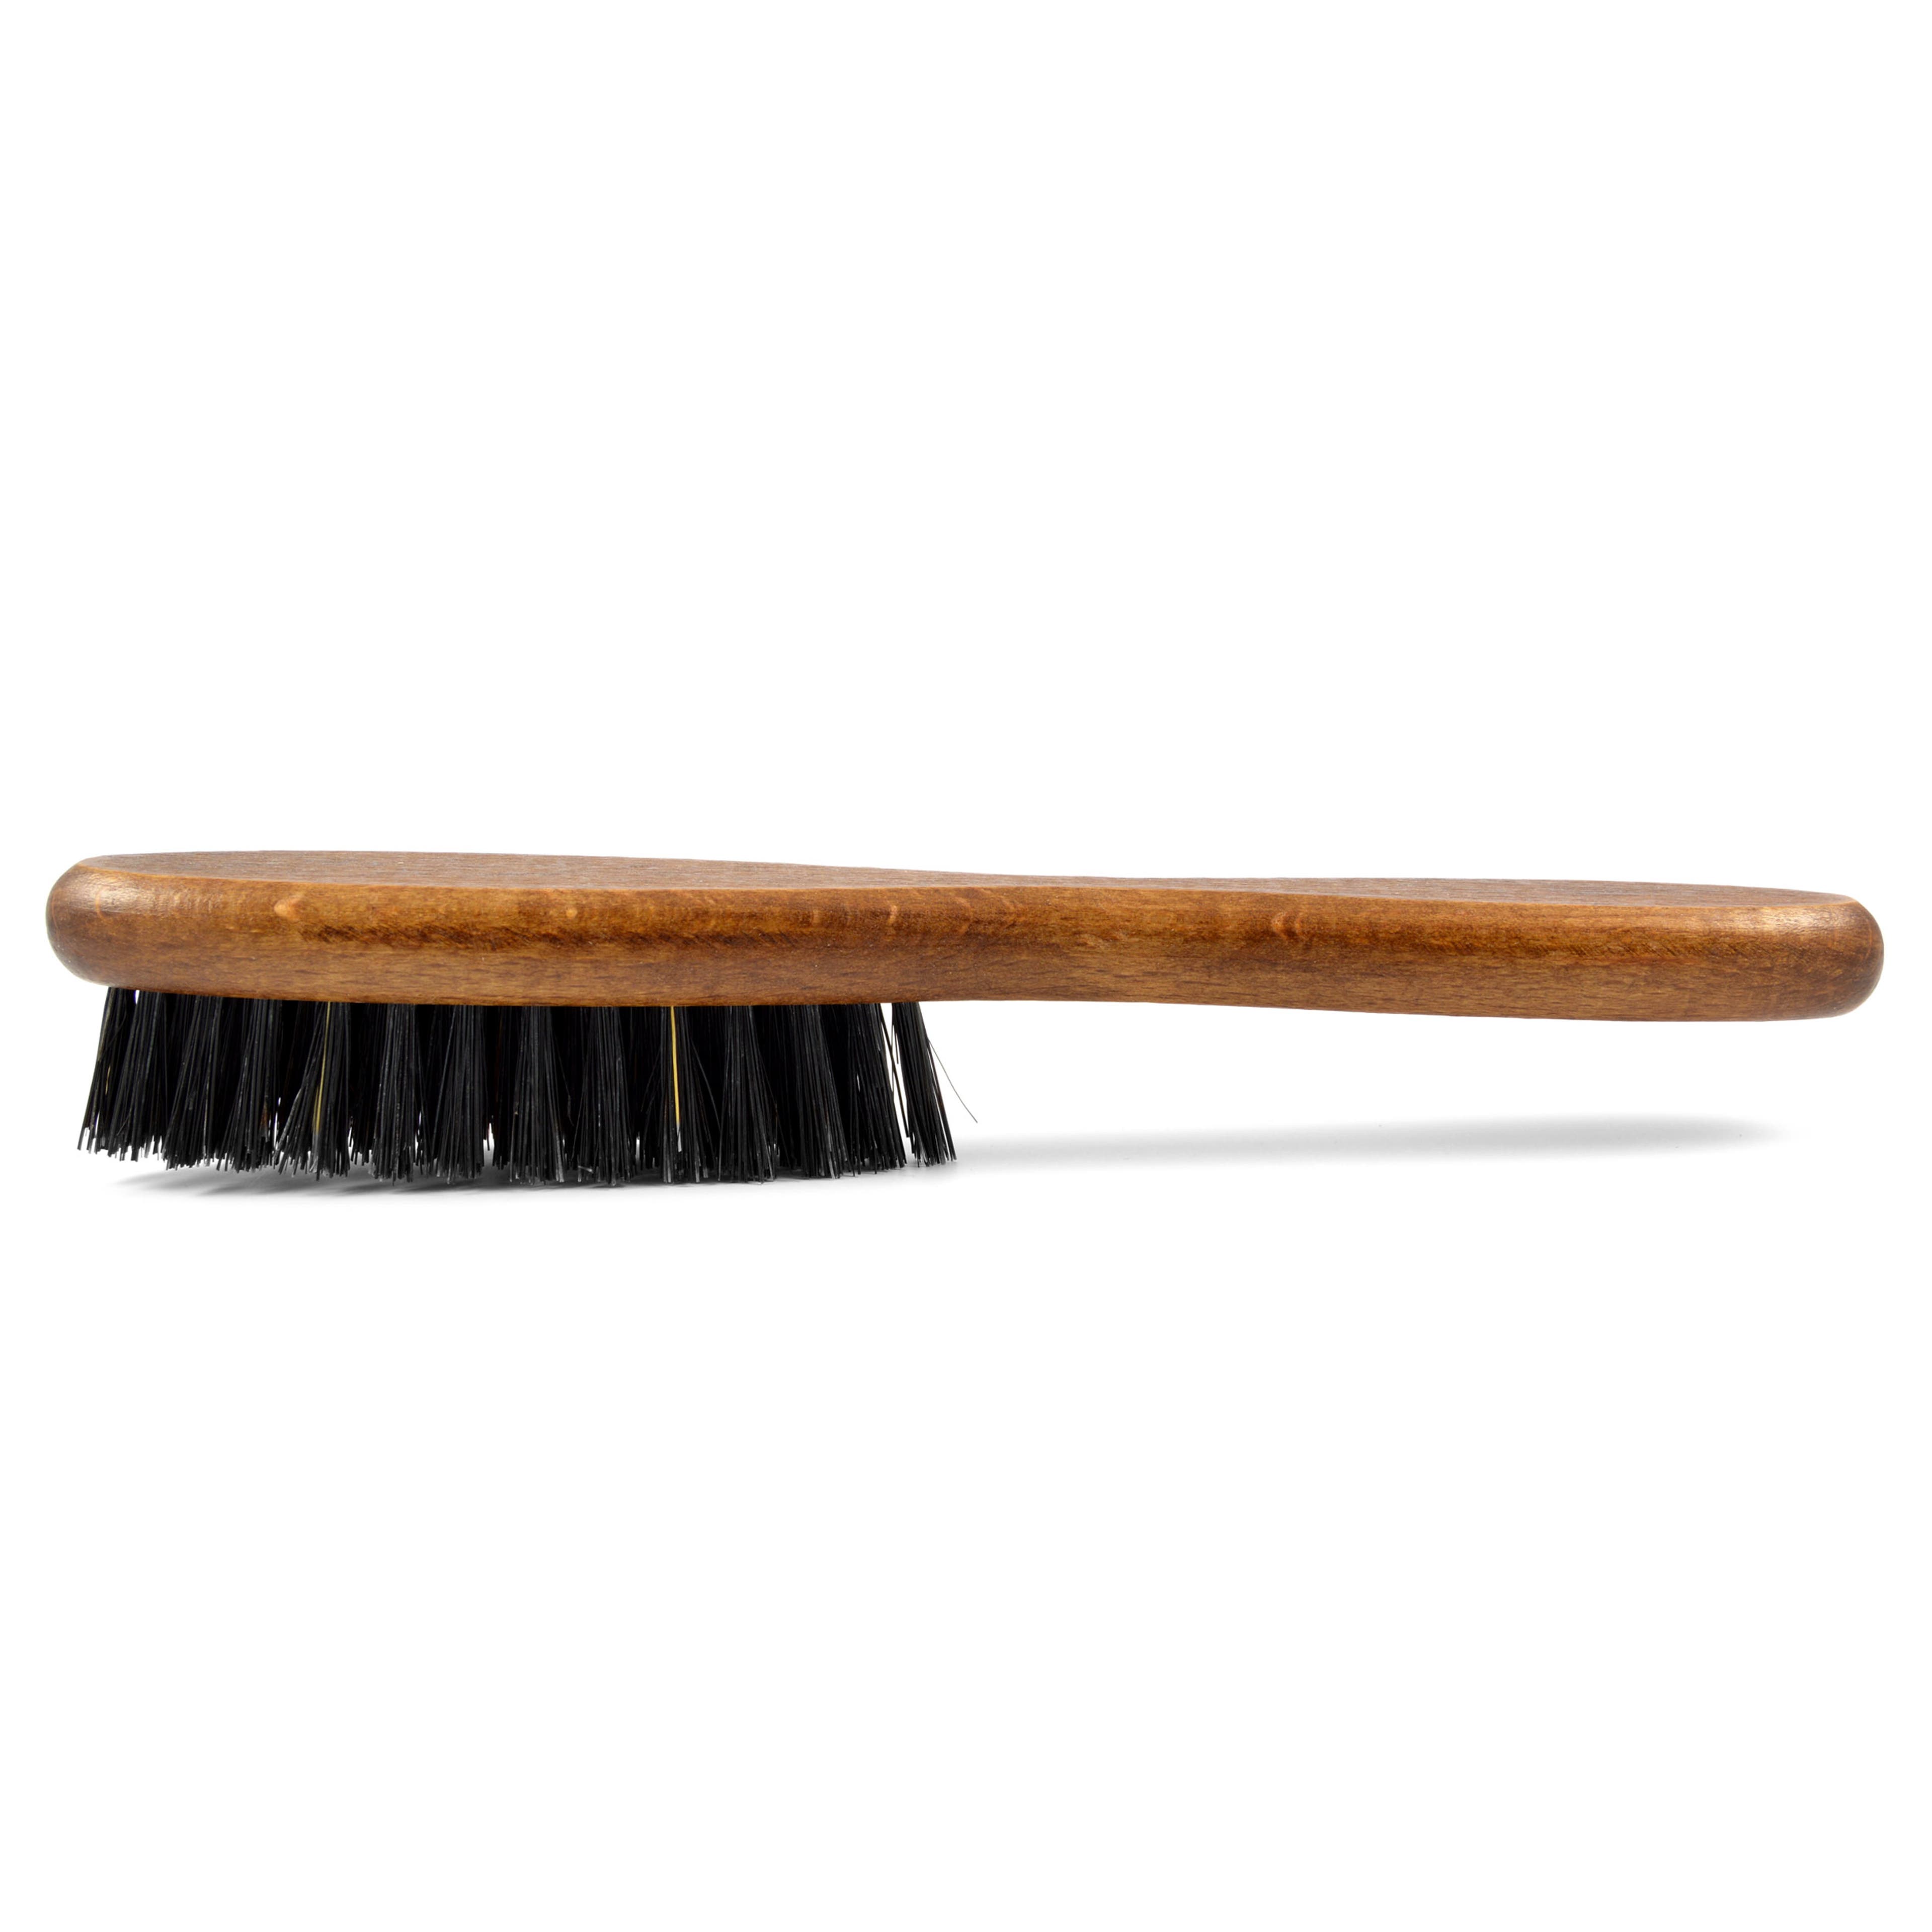 Cepillo para barba estrecho de madera de haya 